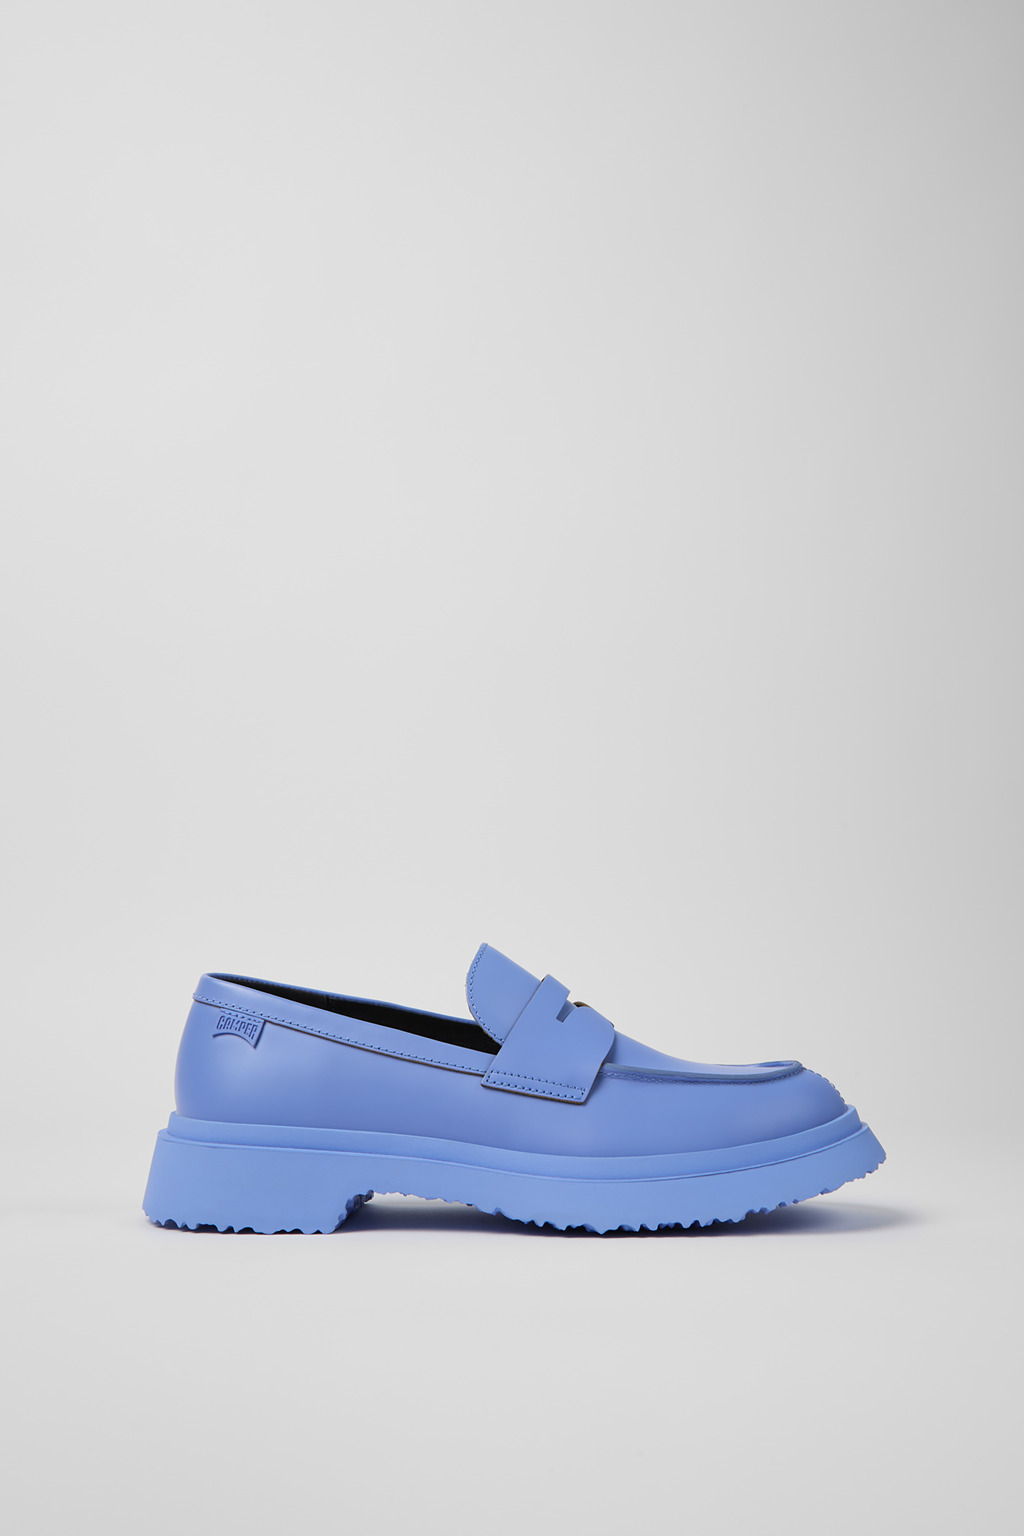 Walden Blue Formal Shoes for Women - Camper Shoes